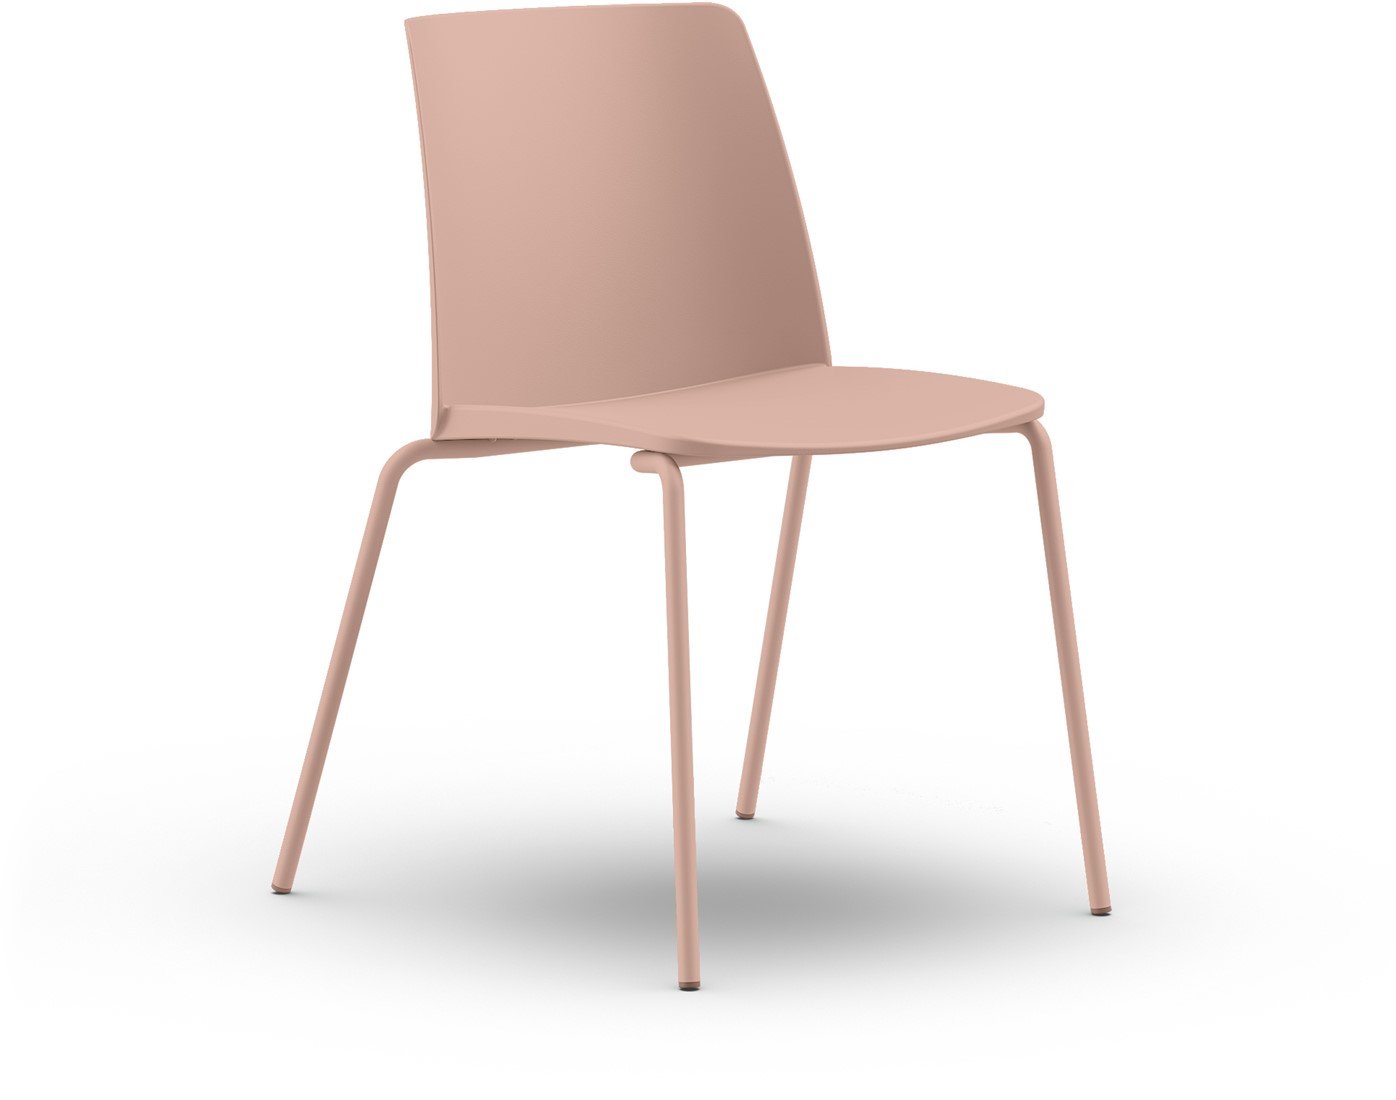 GRAZIE 4 poot - Kunststof stoel met frame in de kleur van de zitschaal - PMS Projectinrichting